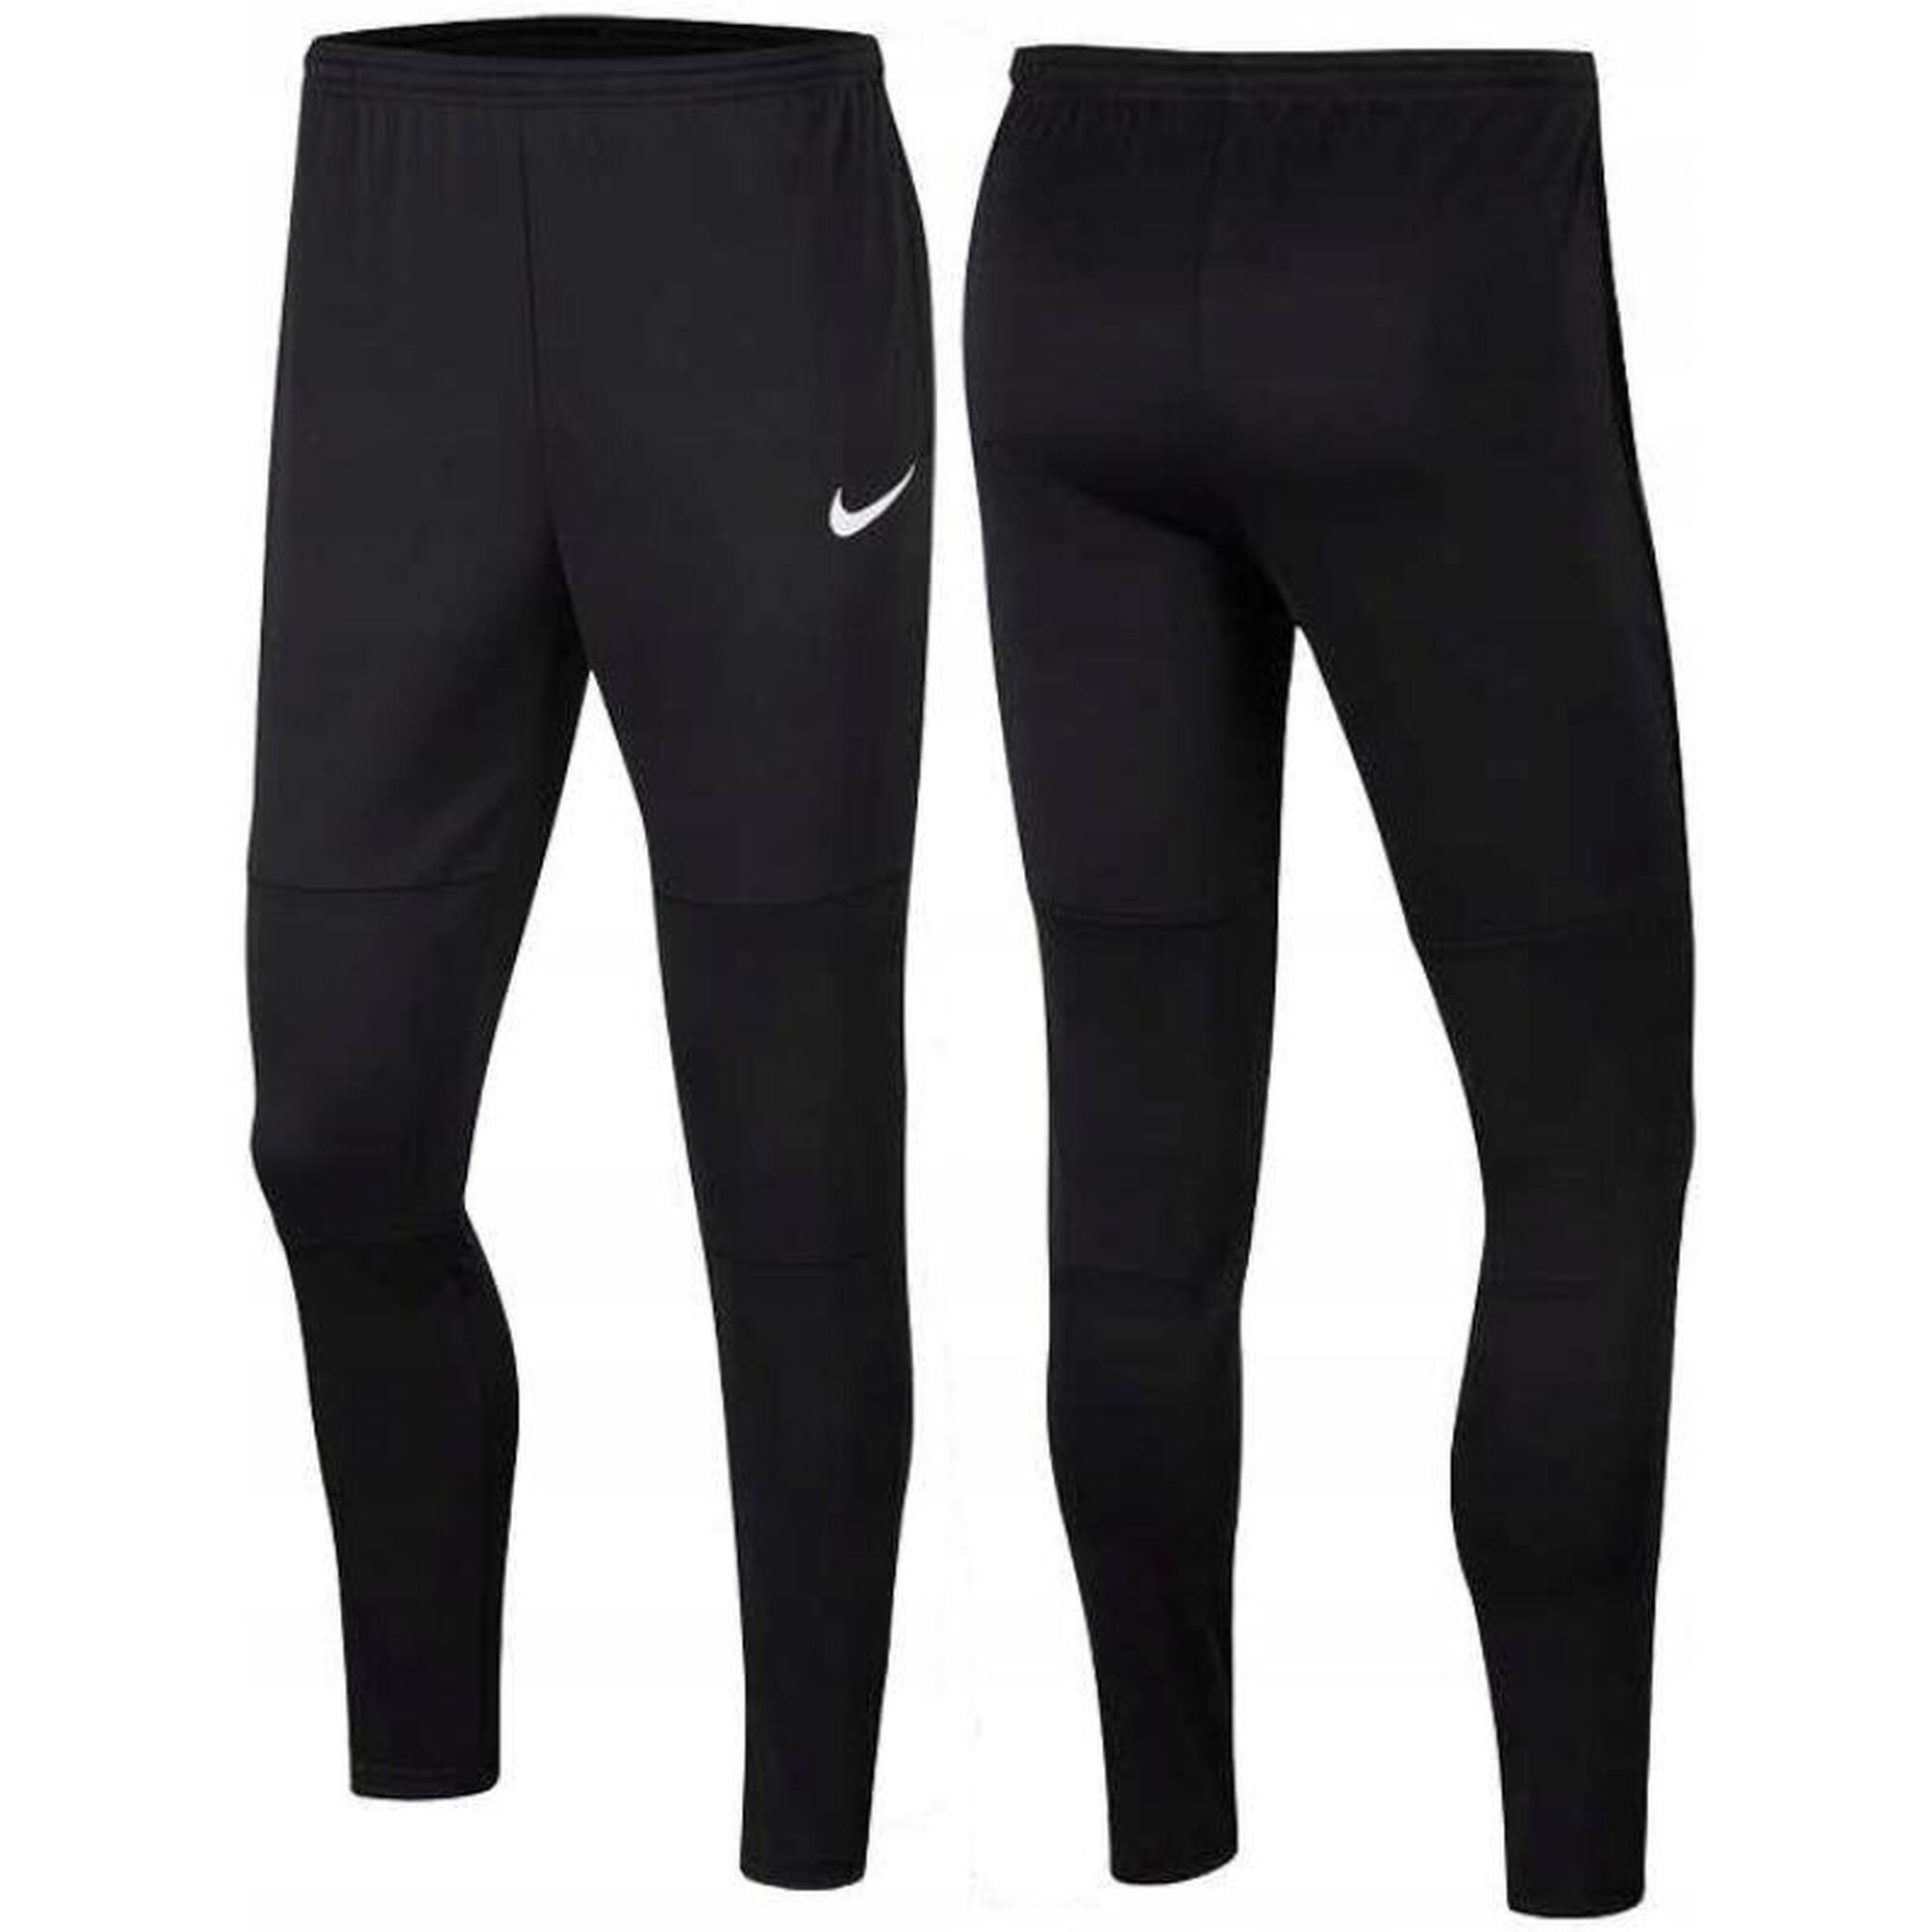 Spodnie do piłki nożnej męskie Nike Dry Park 20 Pant